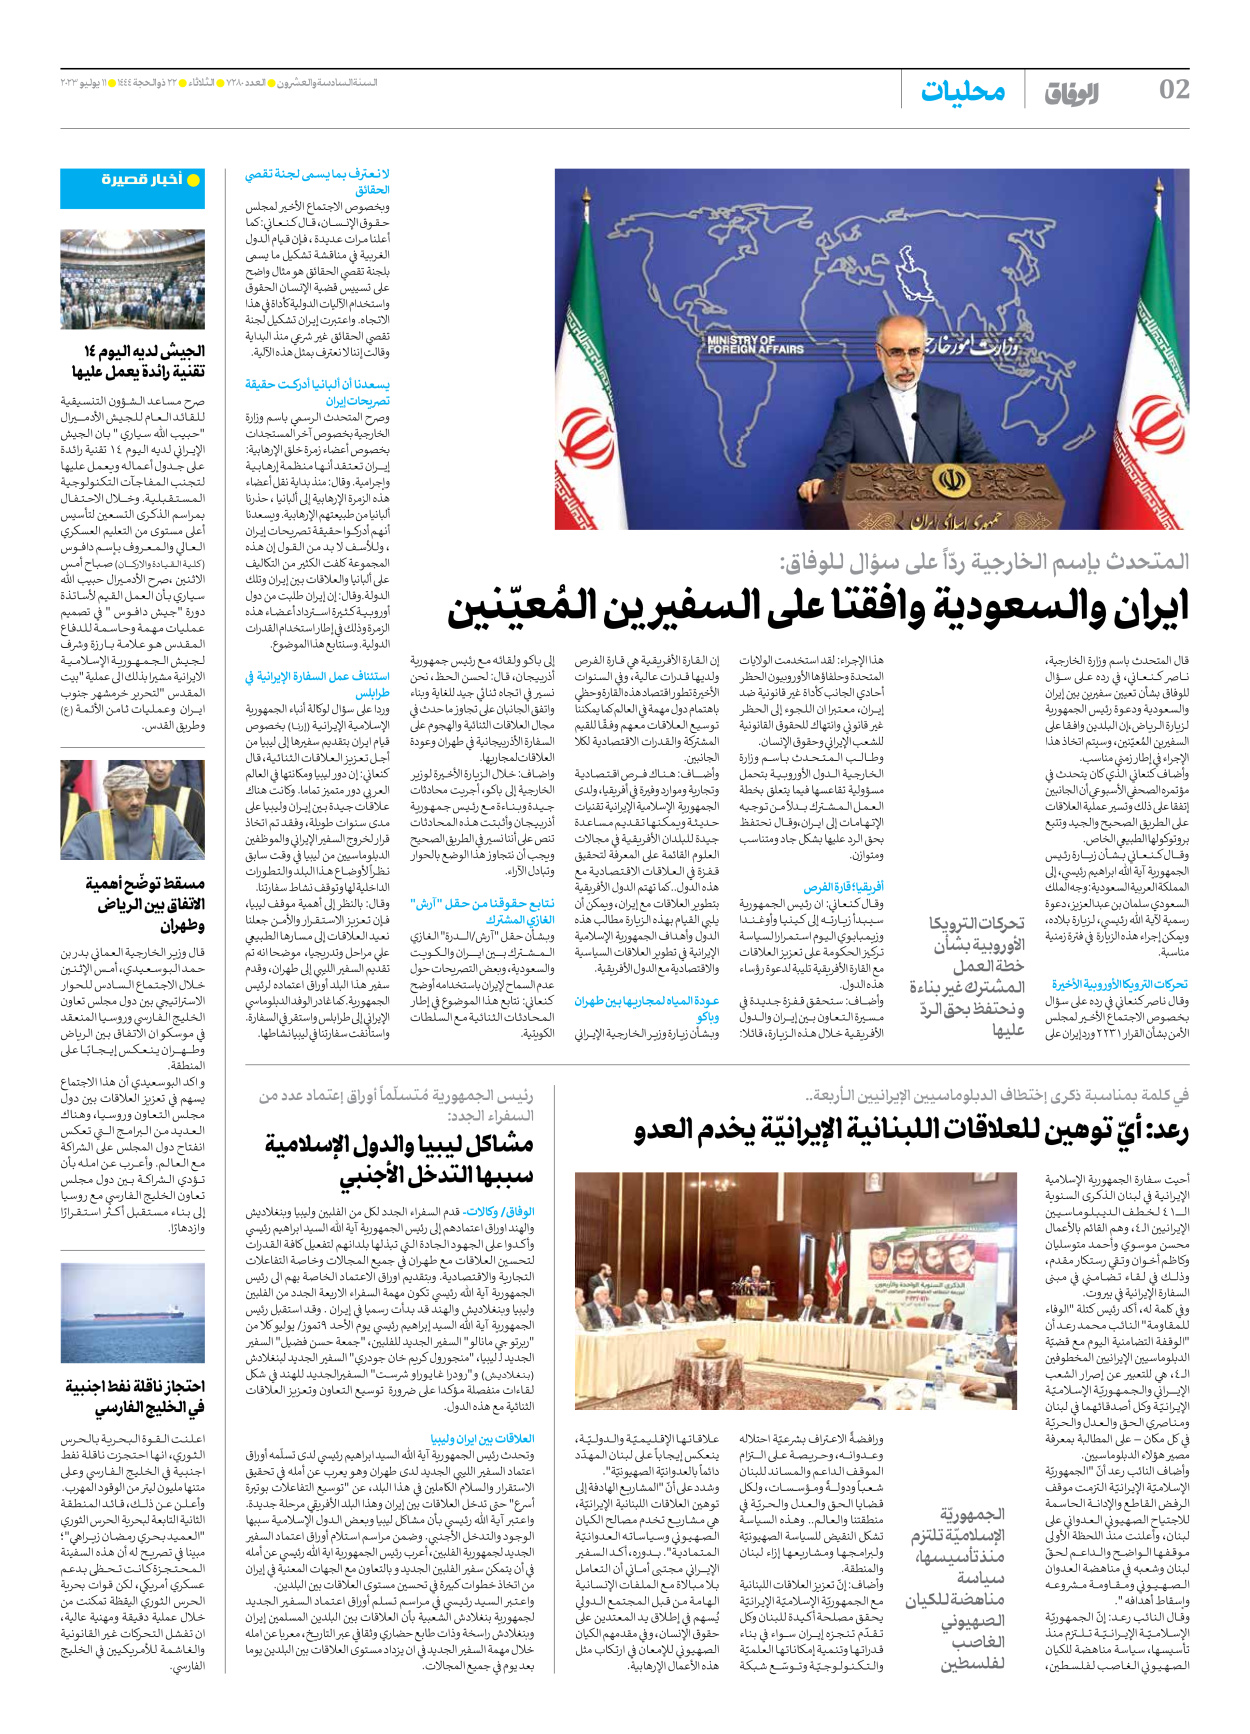 صحیفة ایران الدولیة الوفاق - العدد سبعة آلاف ومائتان وثمانون - ١١ يوليو ٢٠٢٣ - الصفحة ۲